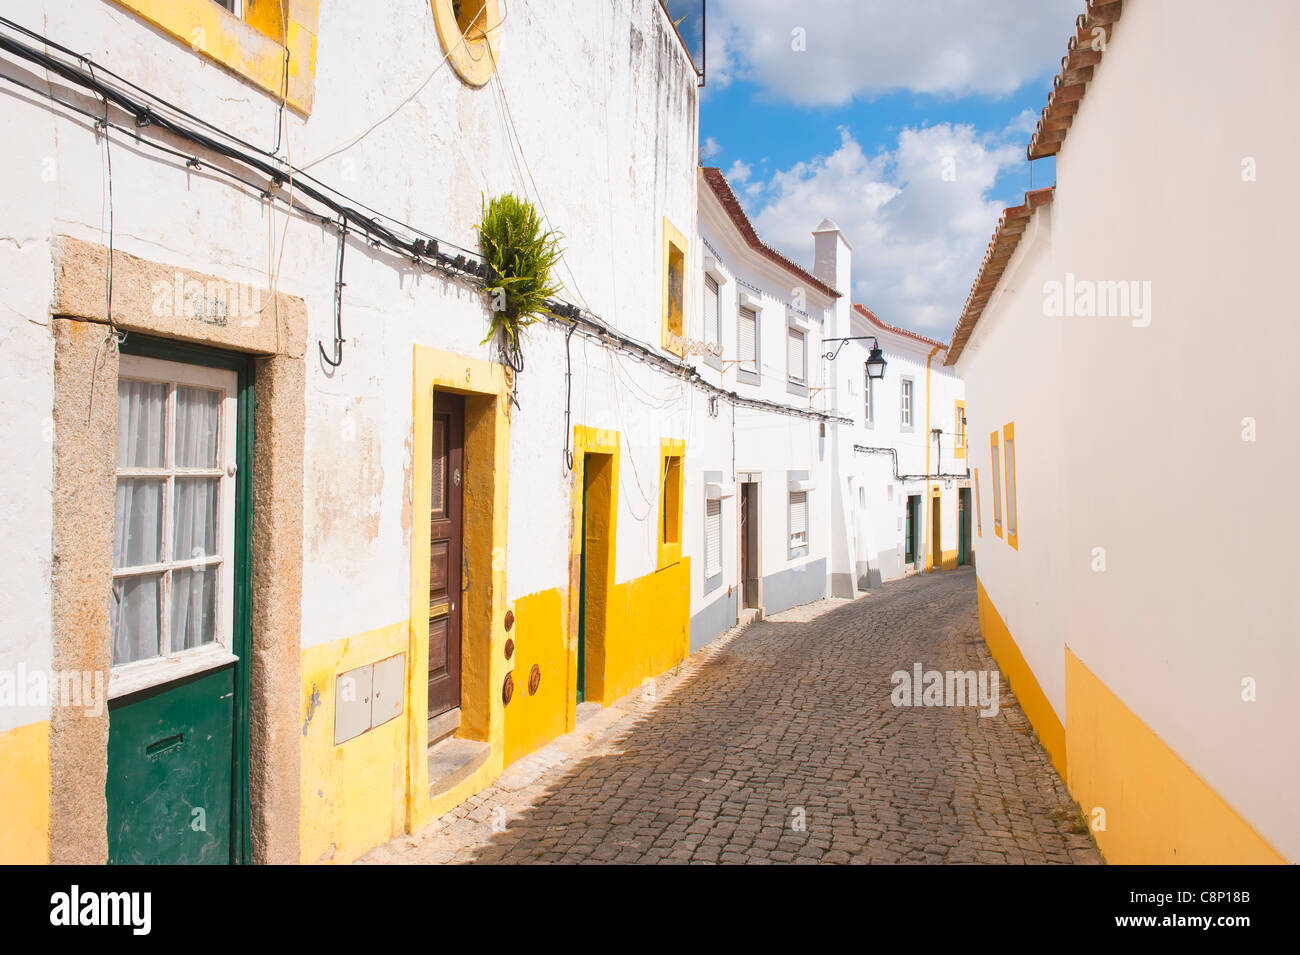 Rue typique de la vieille ville d'Evora, Alentejo, Portugal Banque D'Images